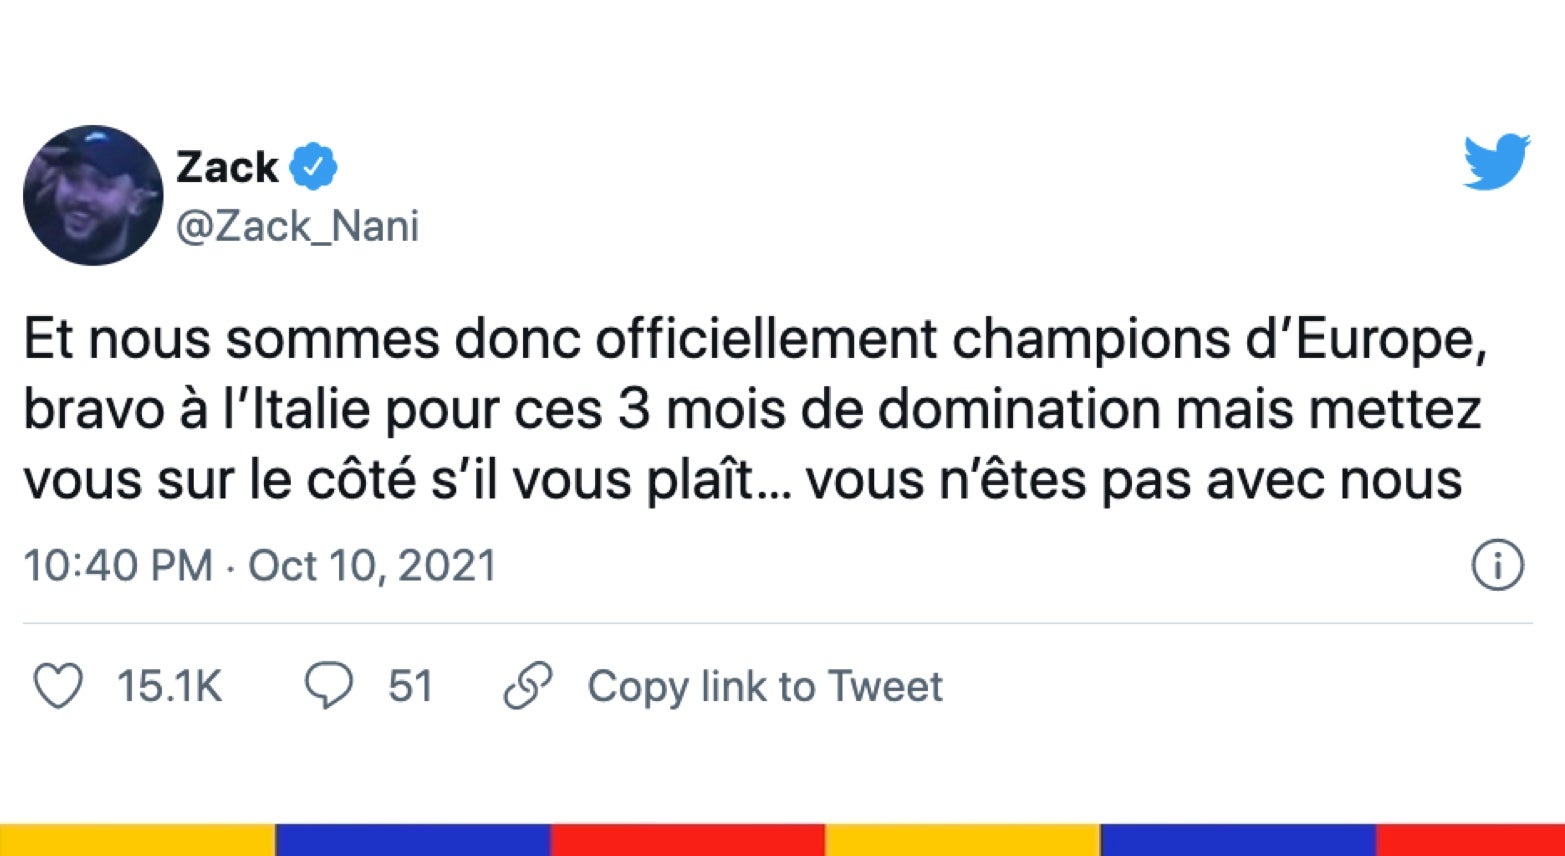 Le grand n'importe quoi des réseaux sociaux : la France remporte la Ligue des nations